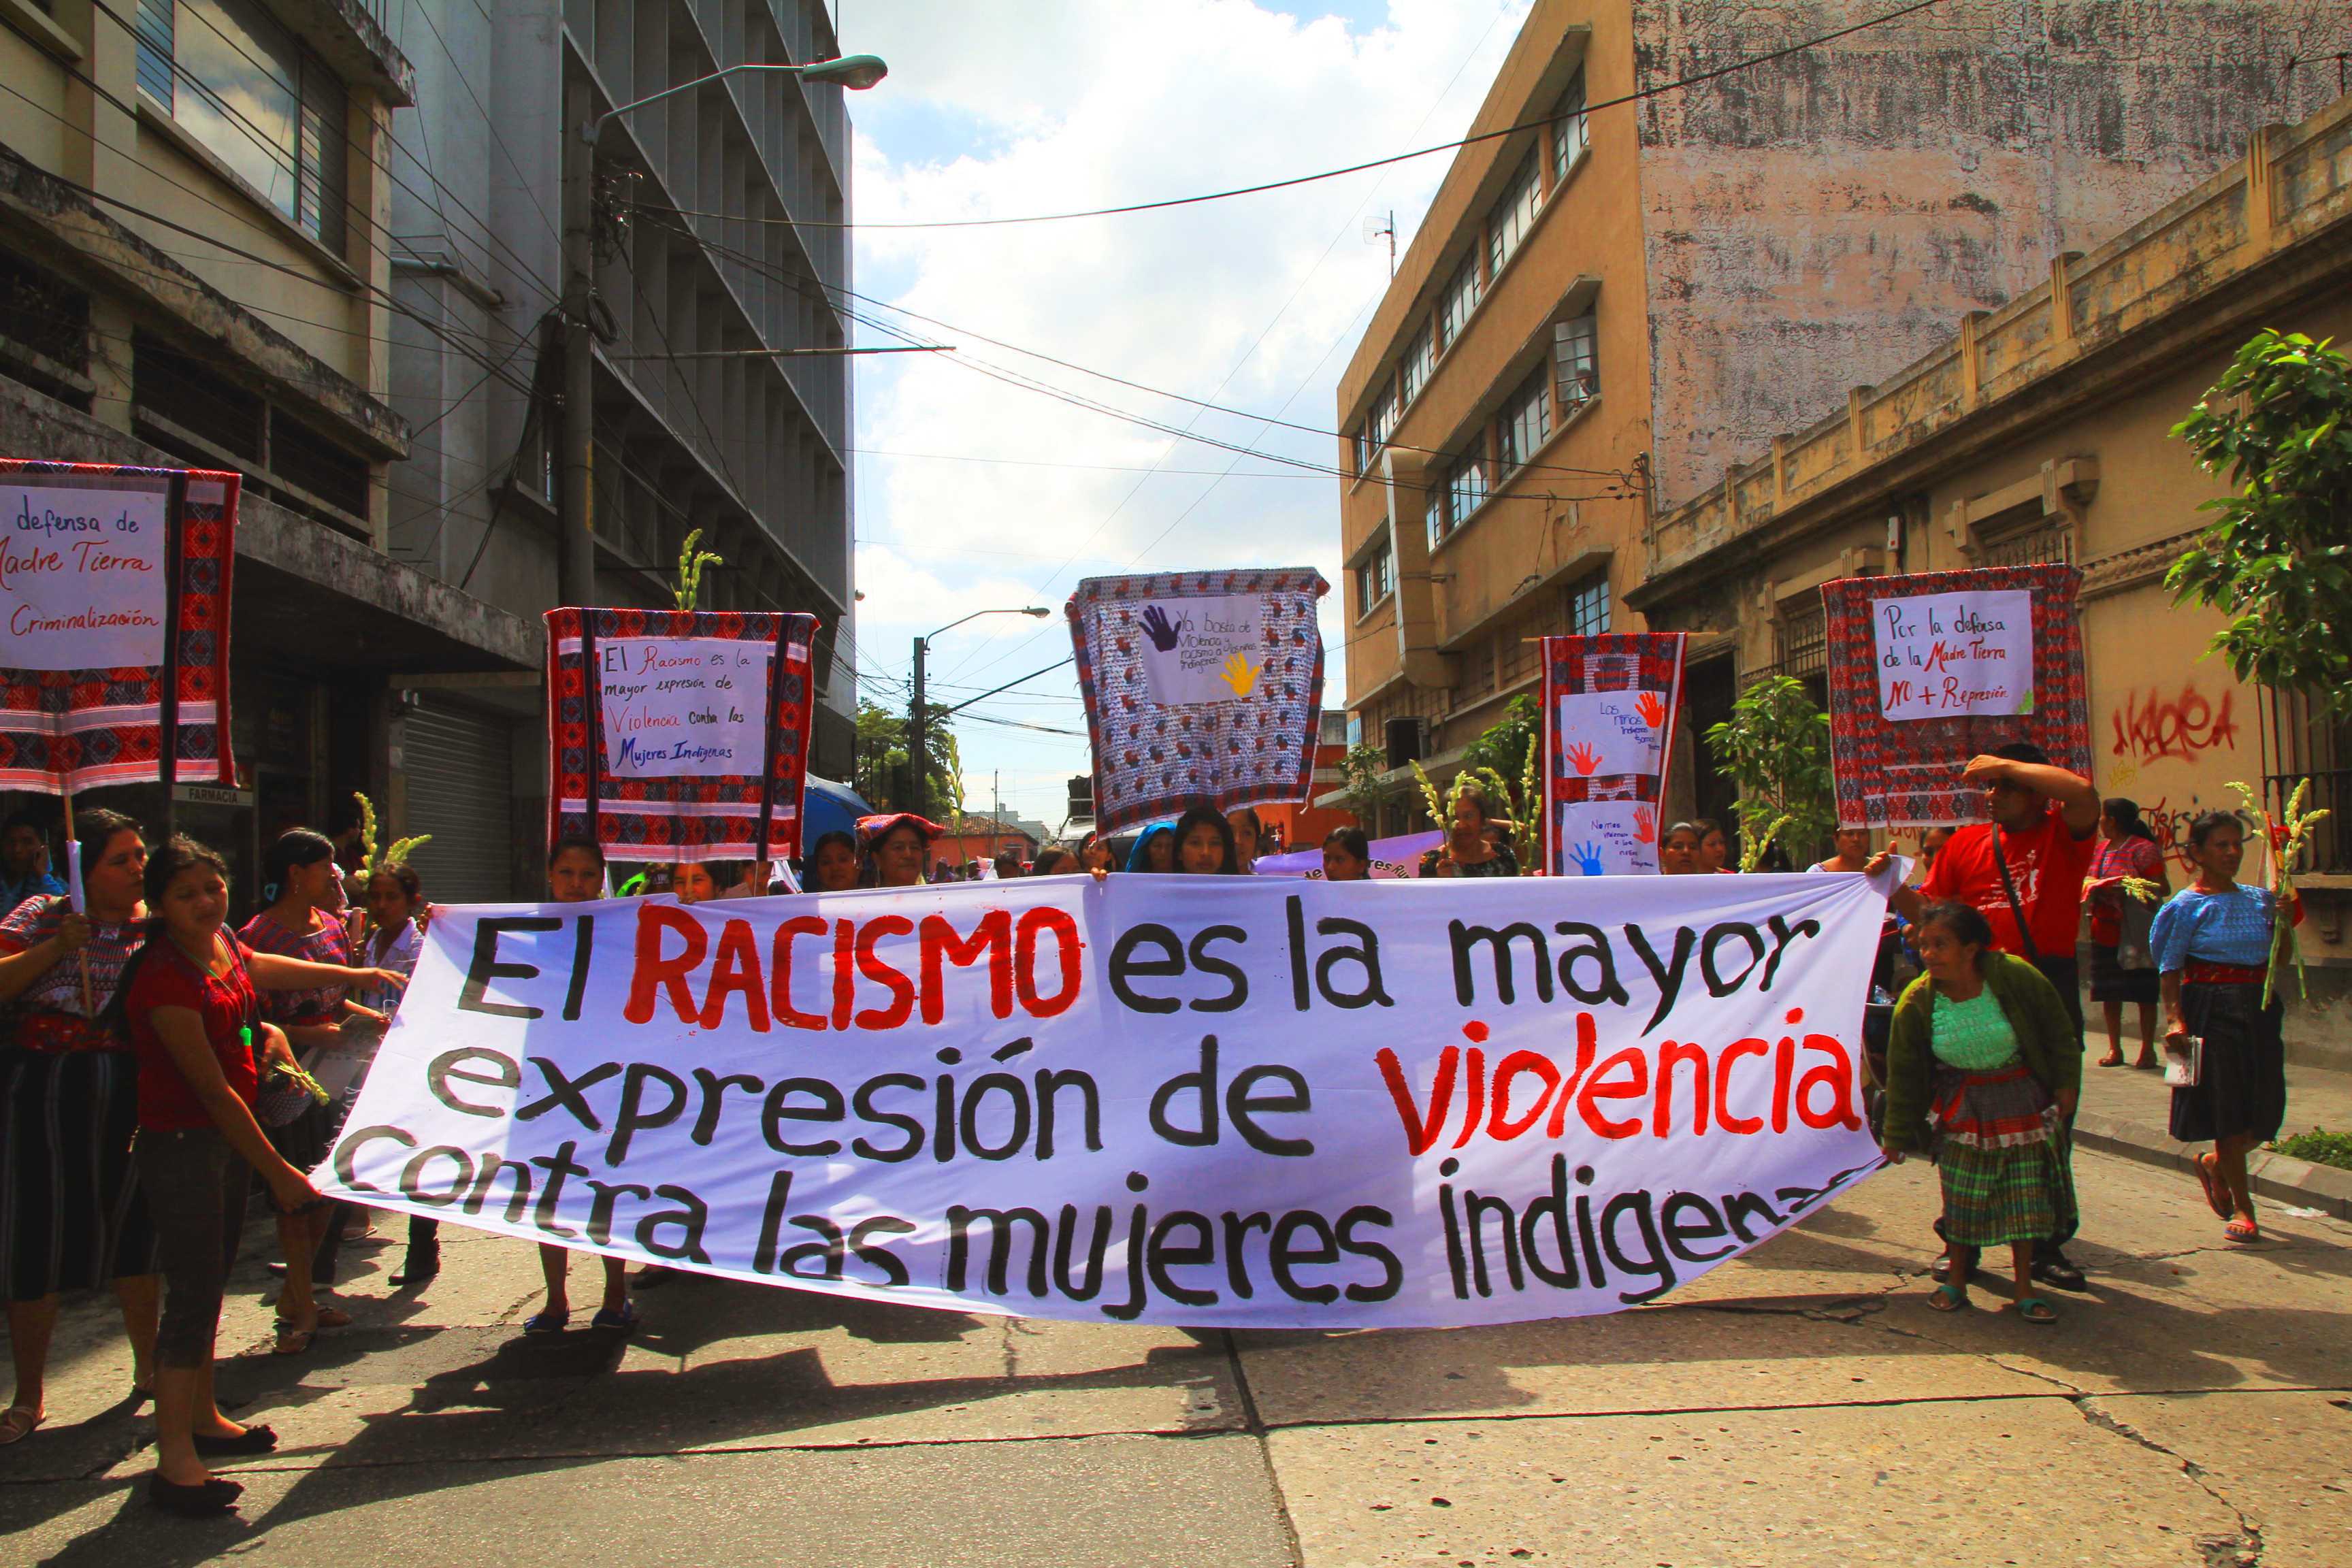 Racismo en las calles. Reflexiones de jóvenes de la Ciudad de Guatemala[1]